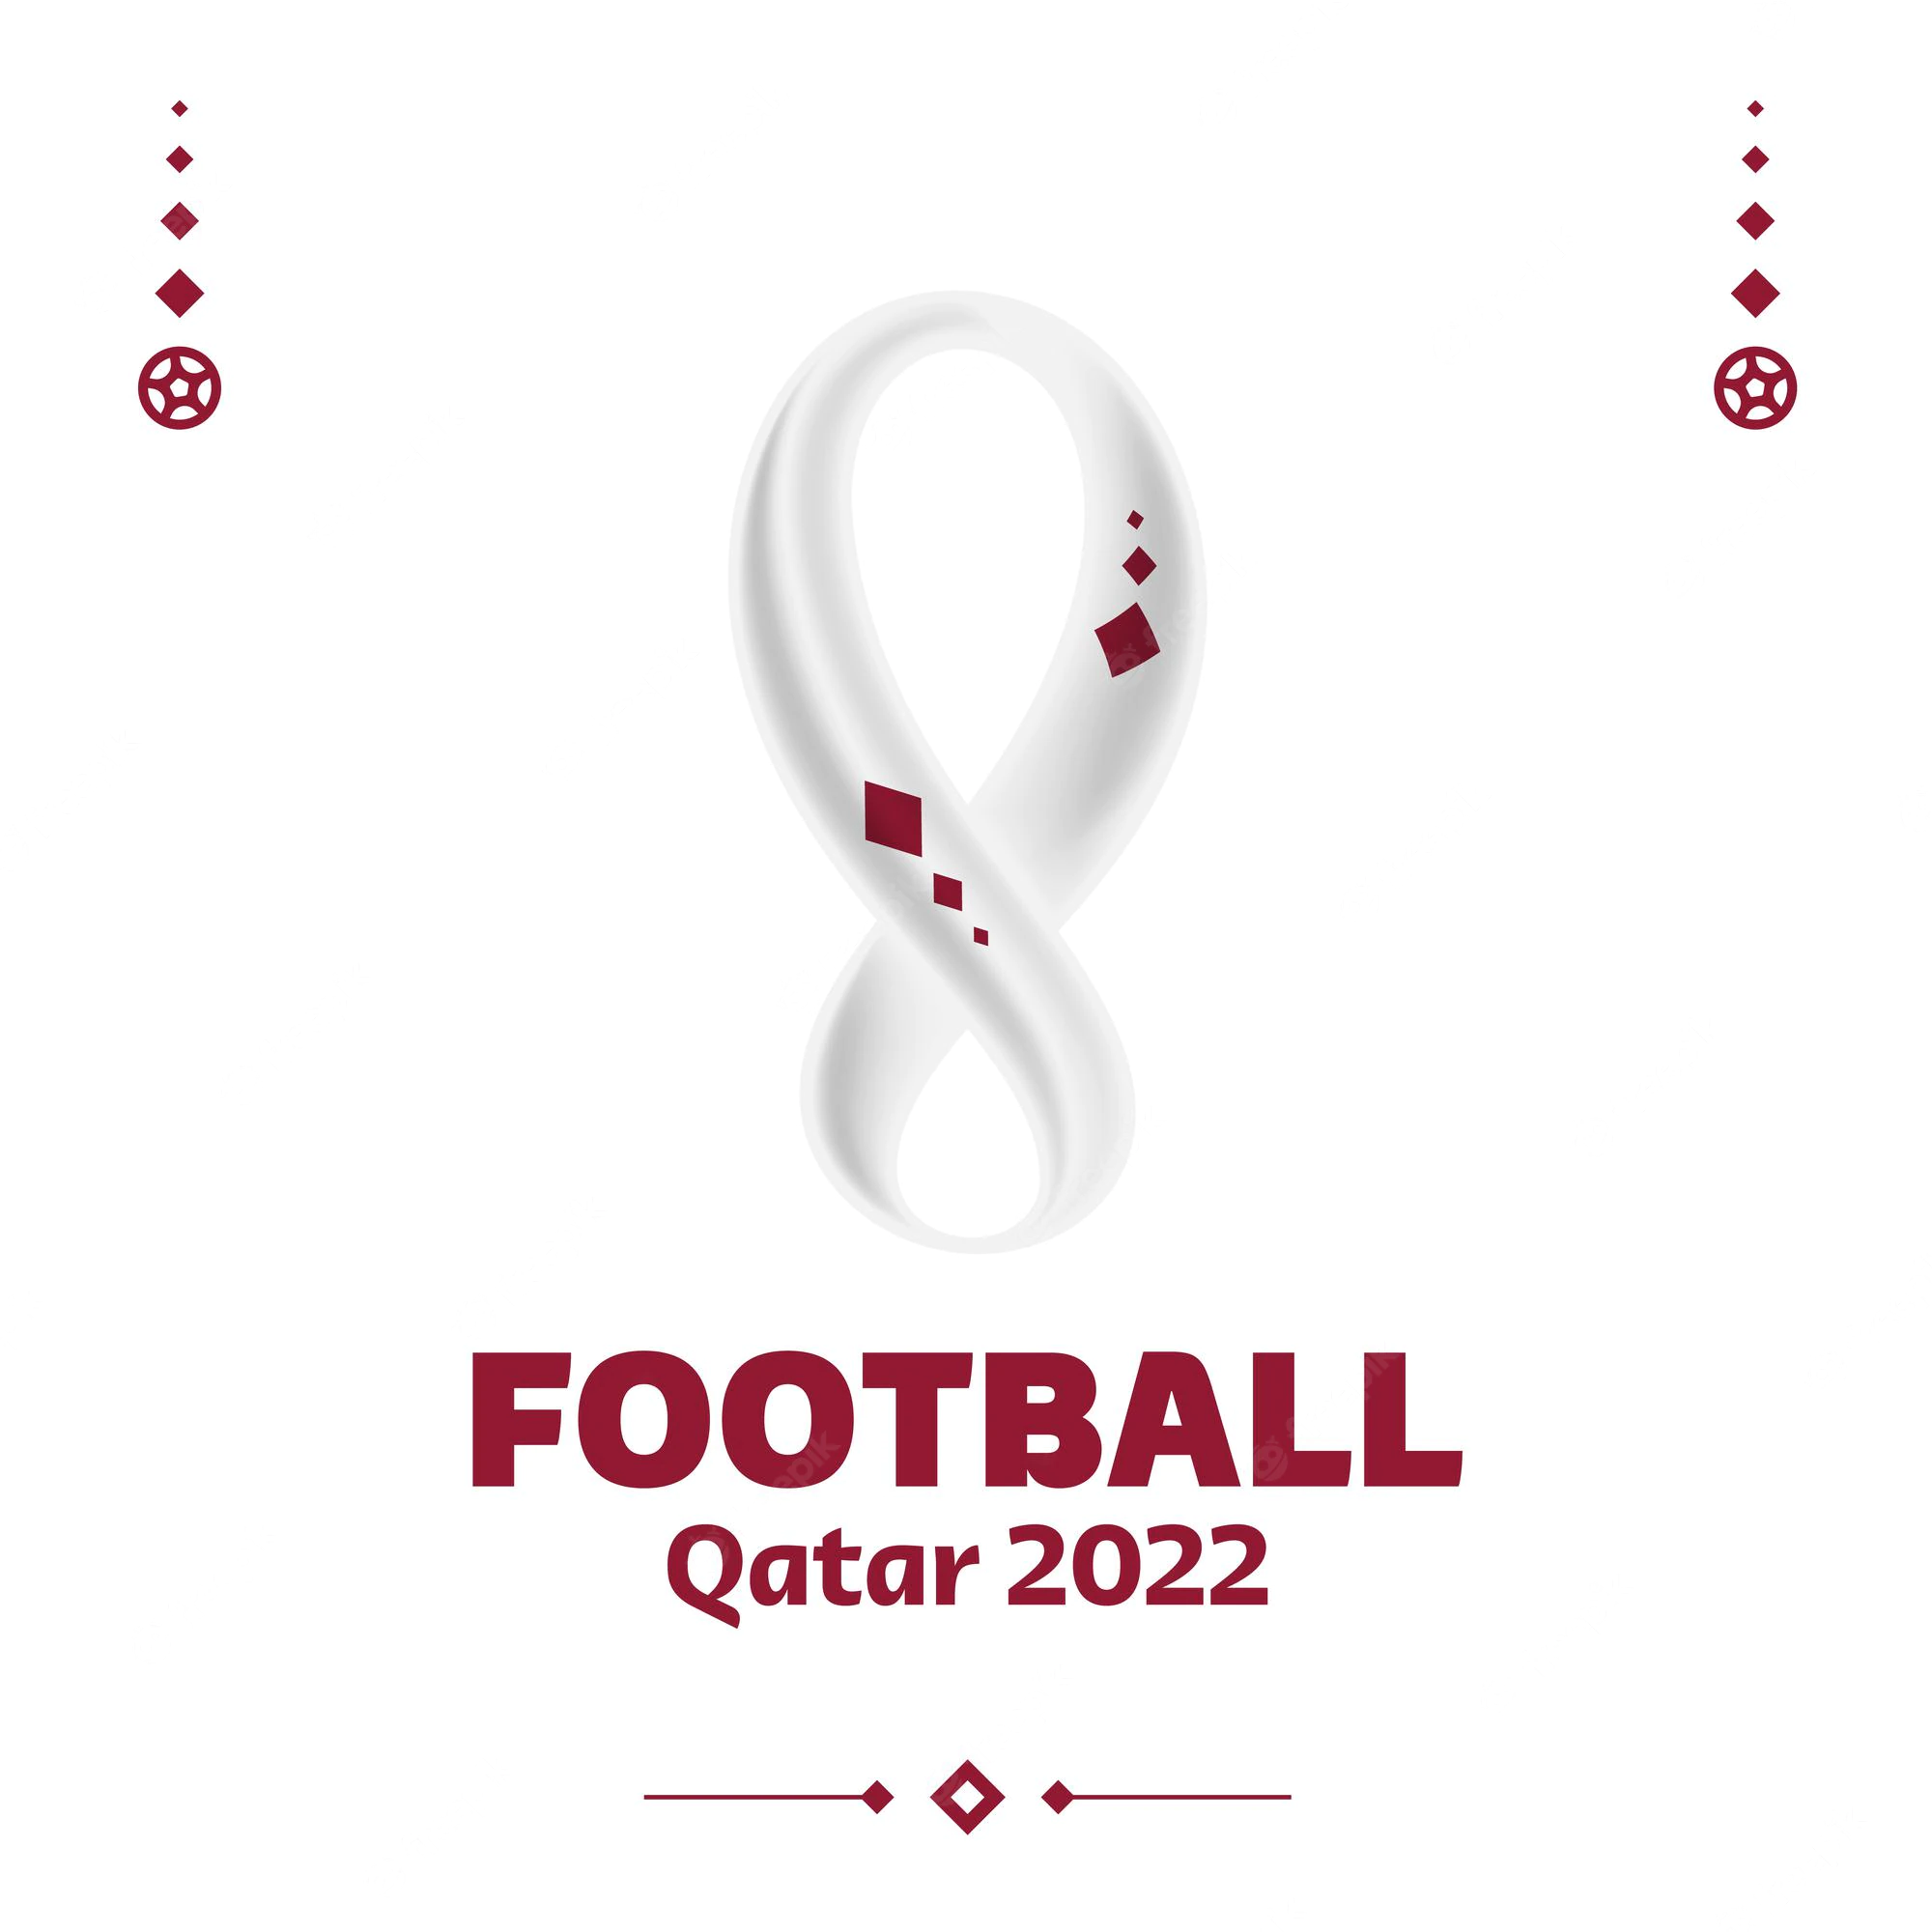 تردد القنوات المفتوحة الناقلة لكأس العالم في قطر 2022 مجانا بدون تشفير